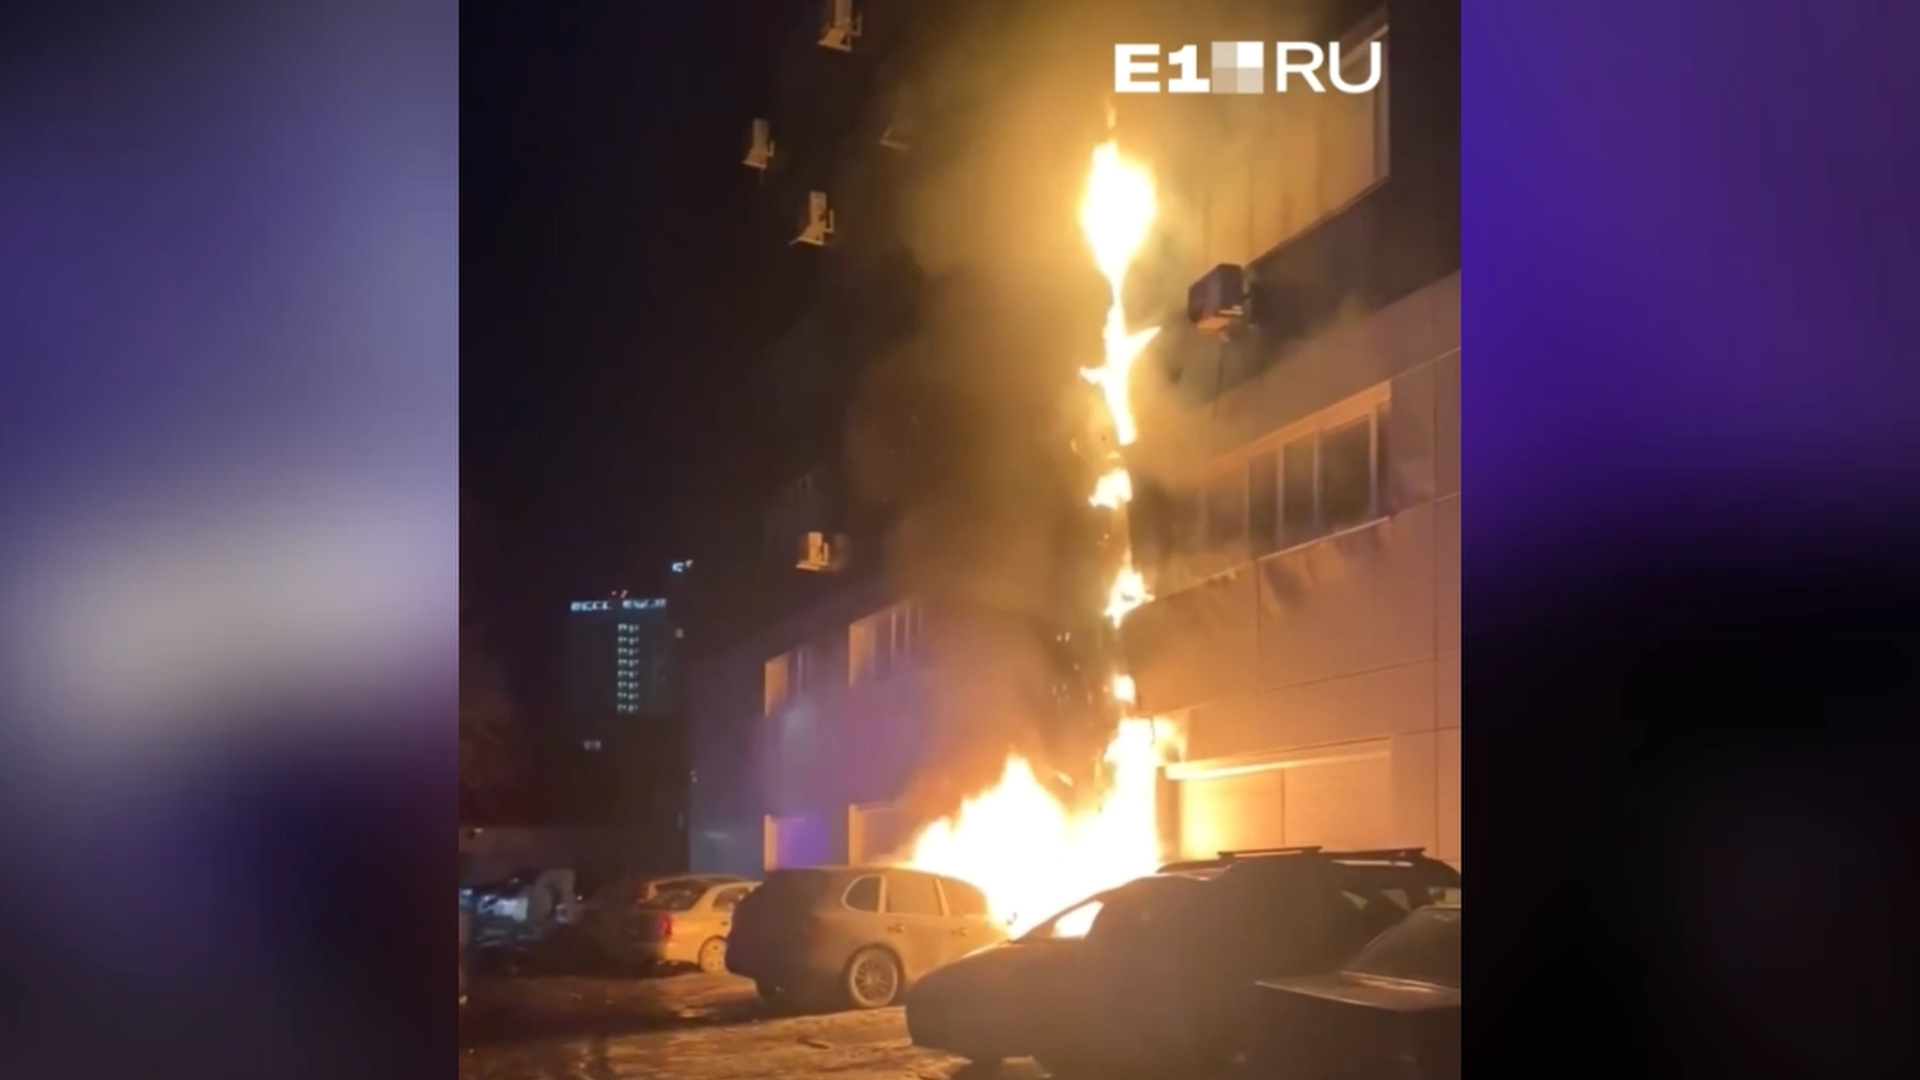 Всё началось с горящего Porsche. В Екатеринбурге ночью загорелось здание первого музея Ельцина